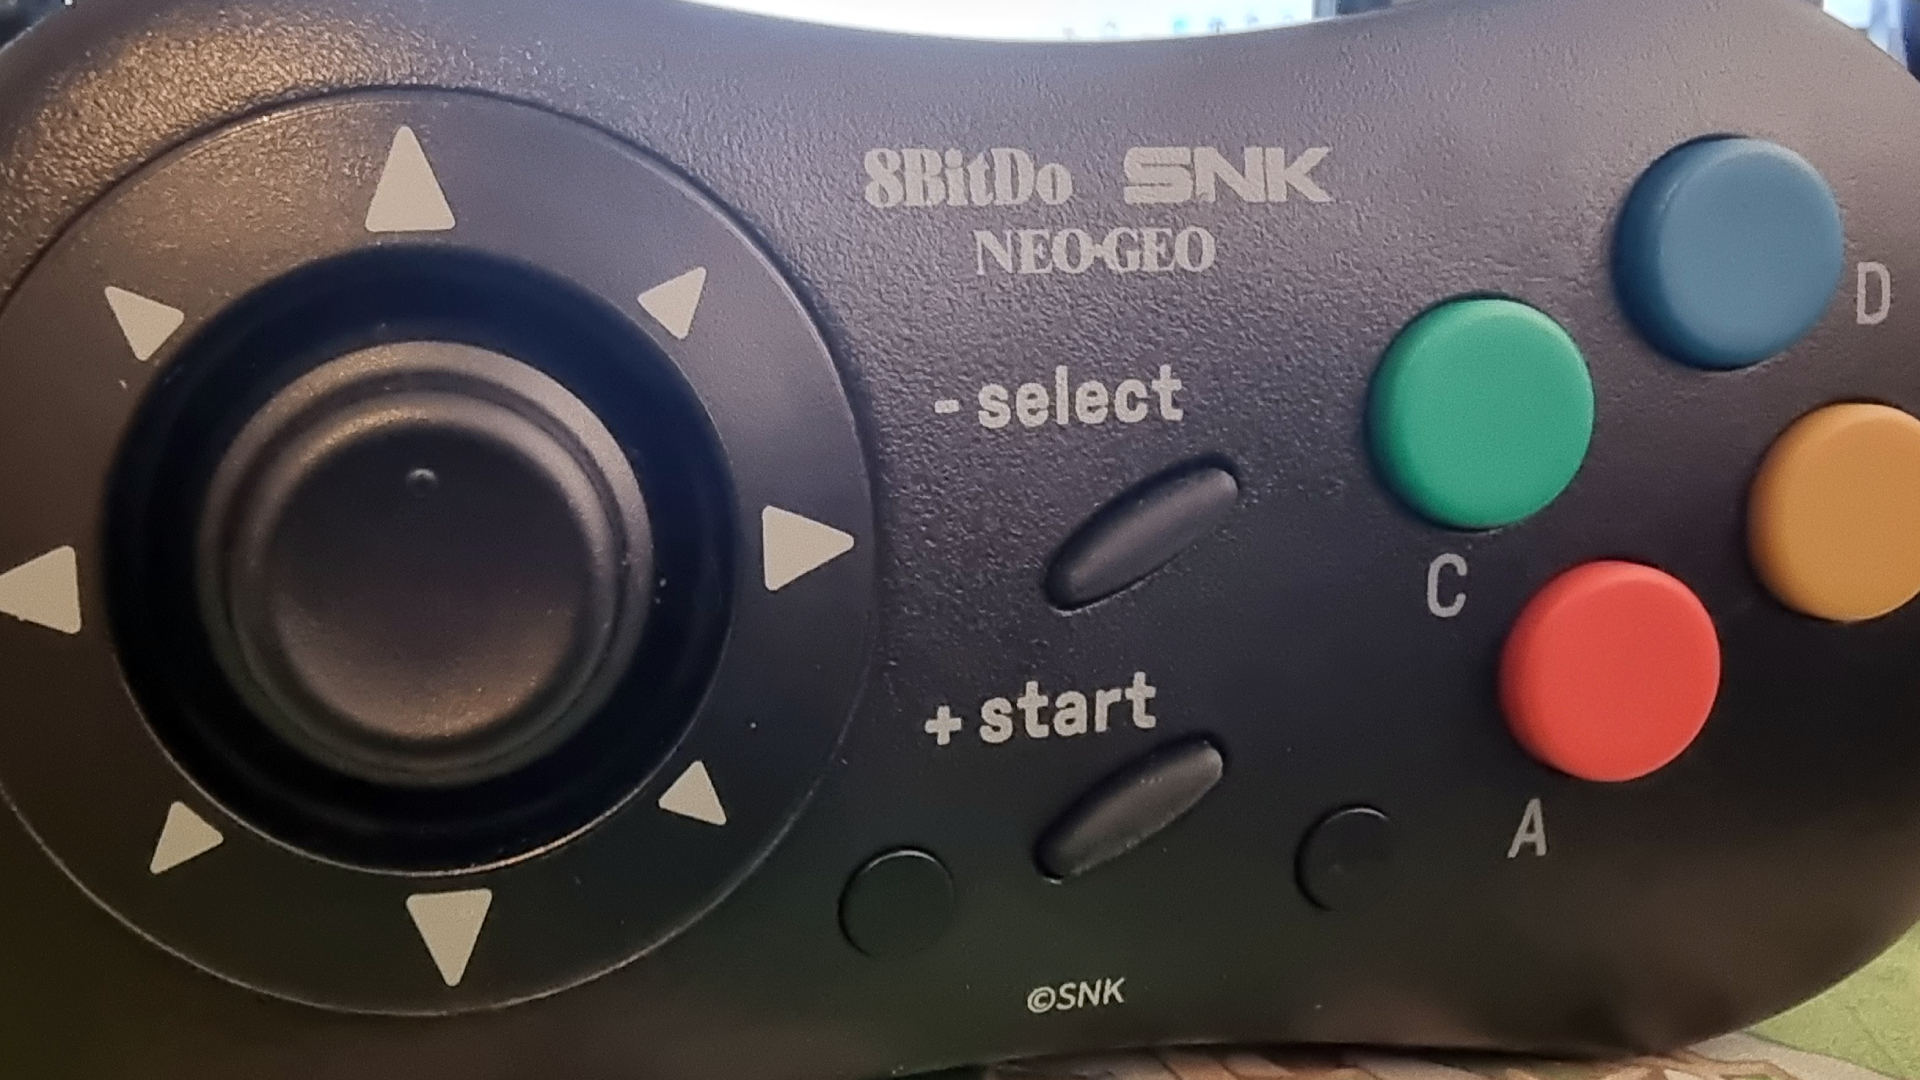 8BitDo NeoGeo Wireless Controller